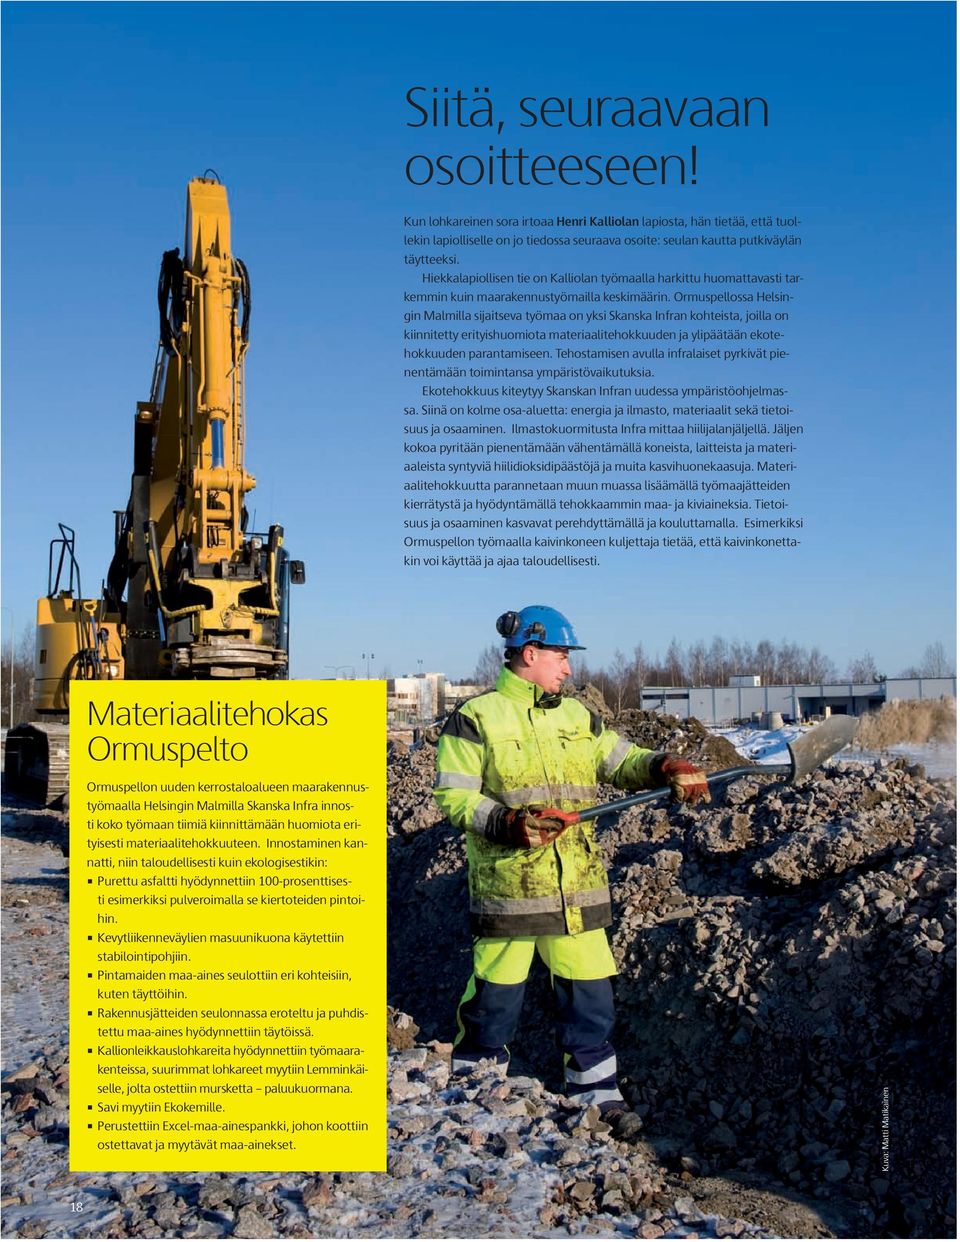 Ormuspellossa Helsingin Malmilla sijaitseva työmaa on yksi Skanska Infran kohteista, joilla on kiinnitetty erityishuomiota materiaalitehokkuuden ja ylipäätään ekotehokkuuden parantamiseen.